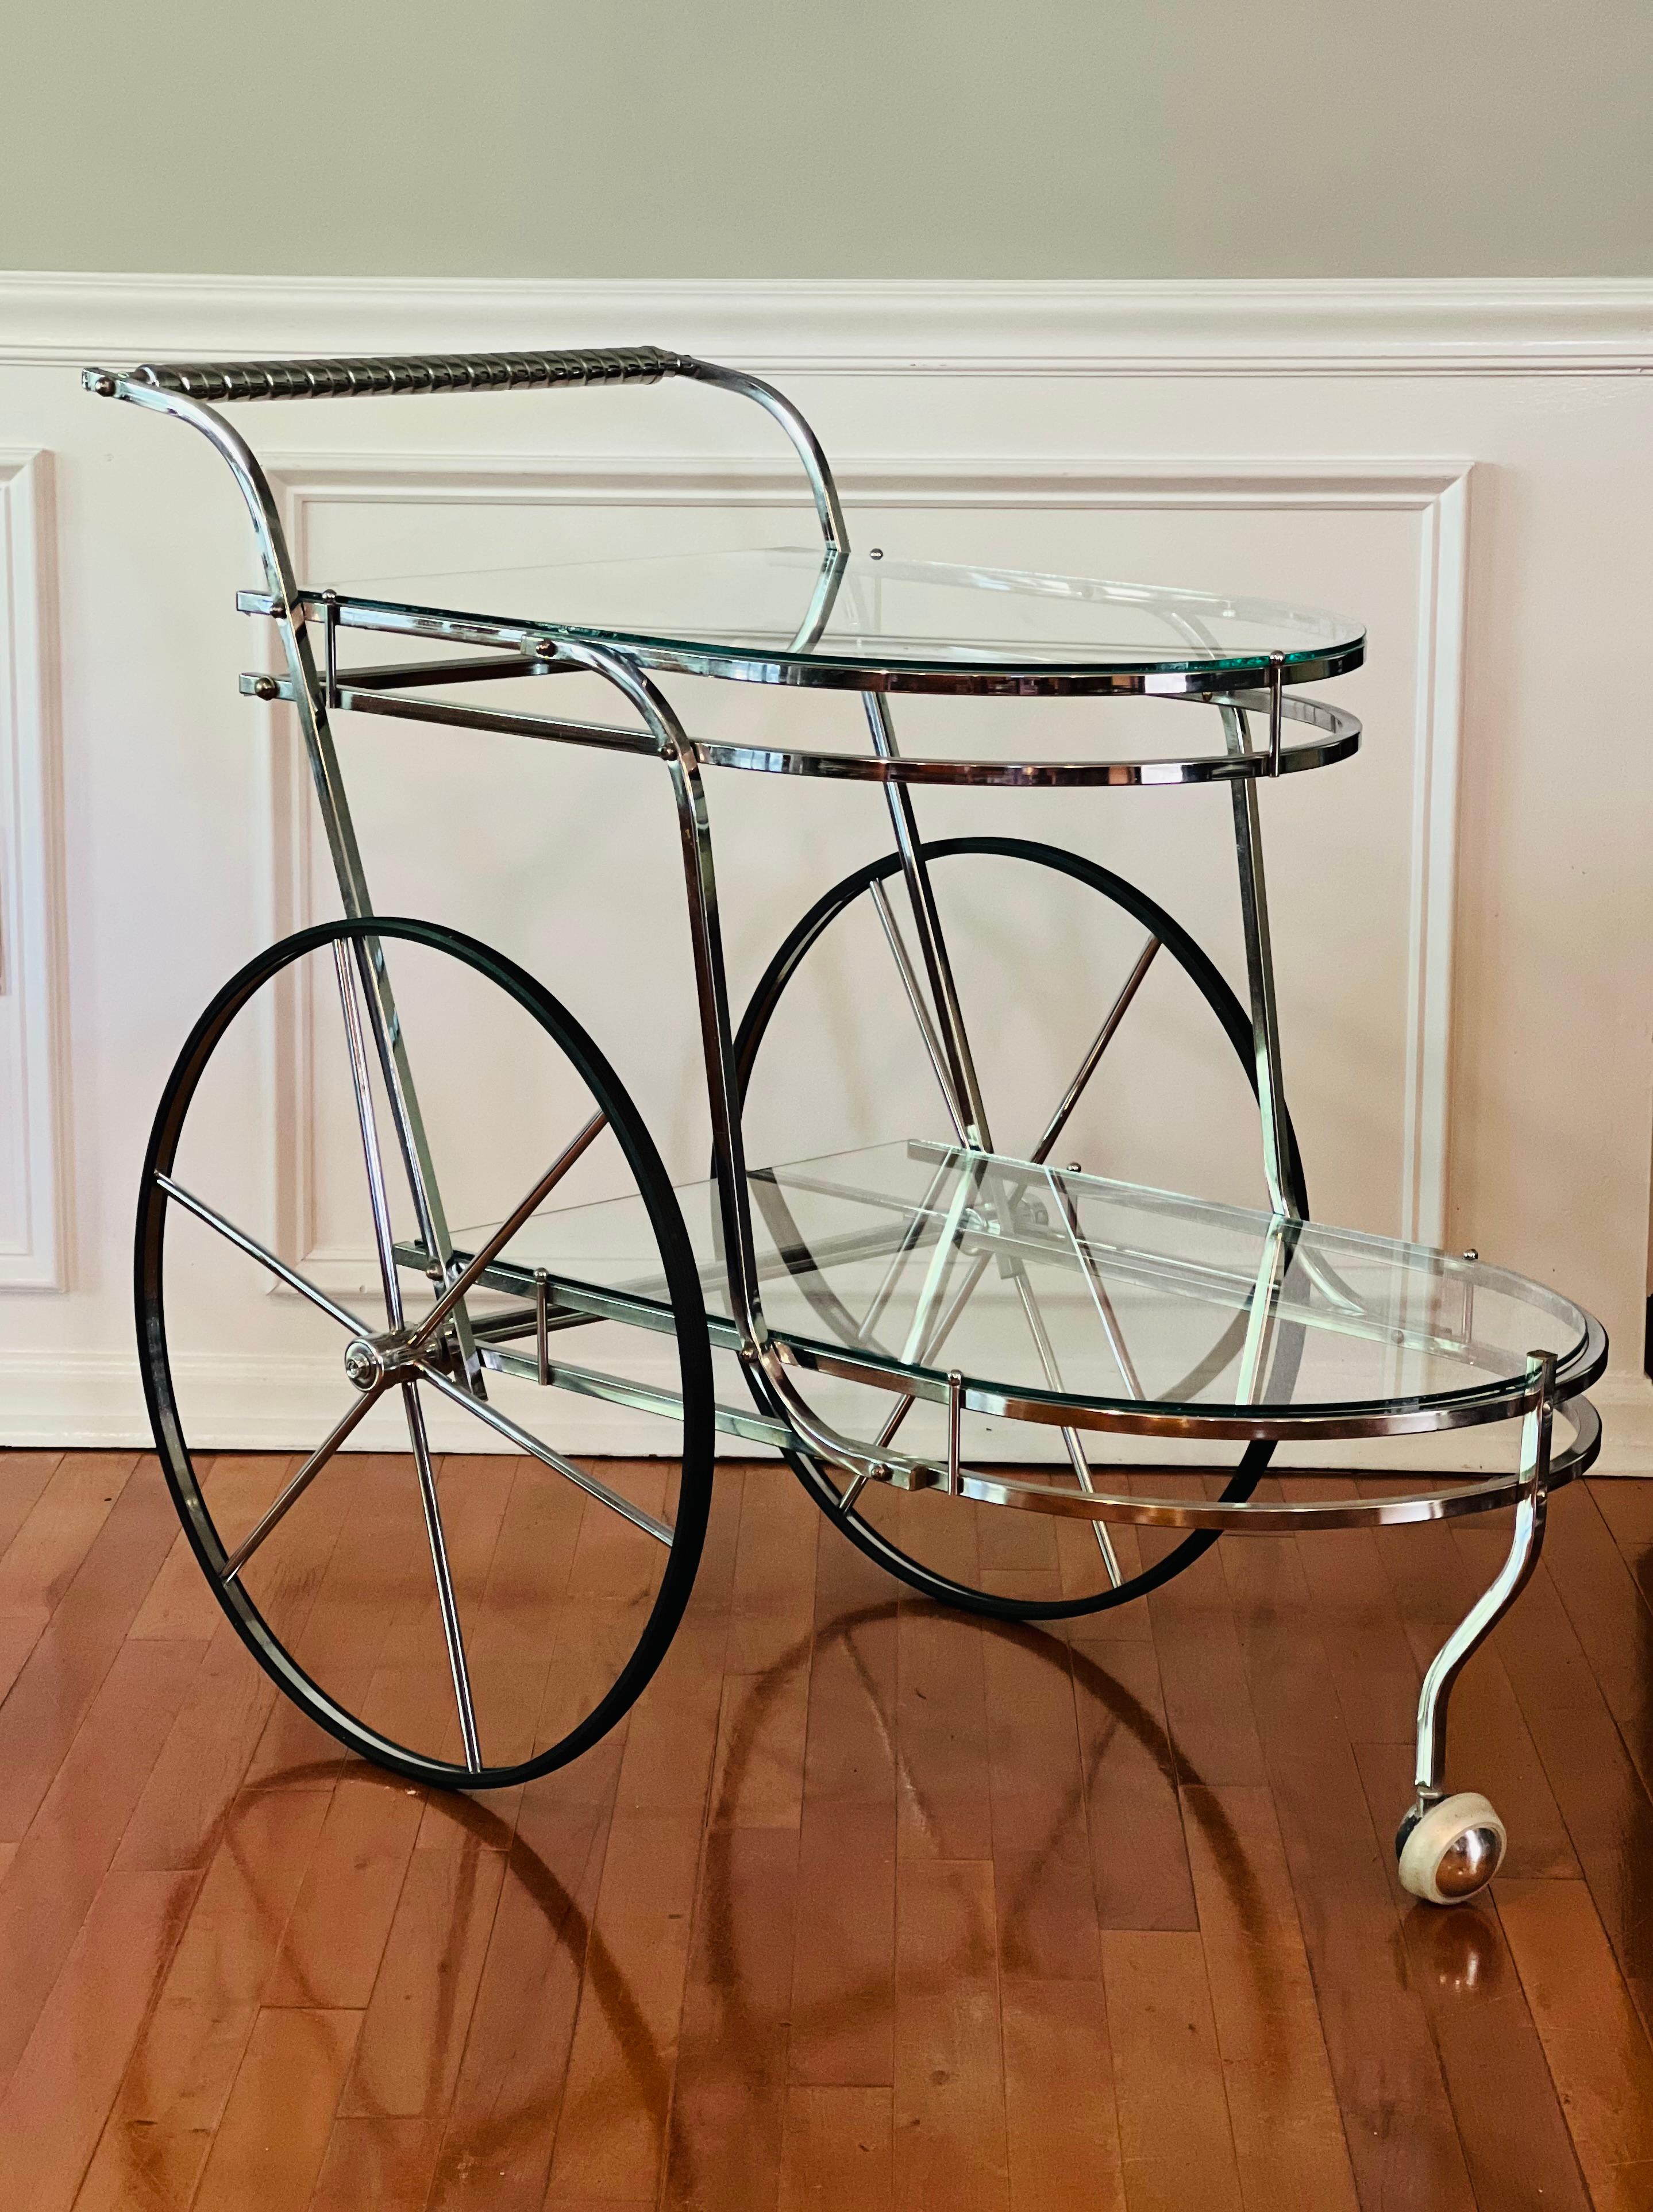 Elegant chariot de bar italien vintage à deux niveaux en verre et chrome poli. 

Comprend deux grandes roues de type chariot et une petite roue pivotante à l'avant. Poignée en corde torsadée. Les chromes sont brillants et en très bon état.